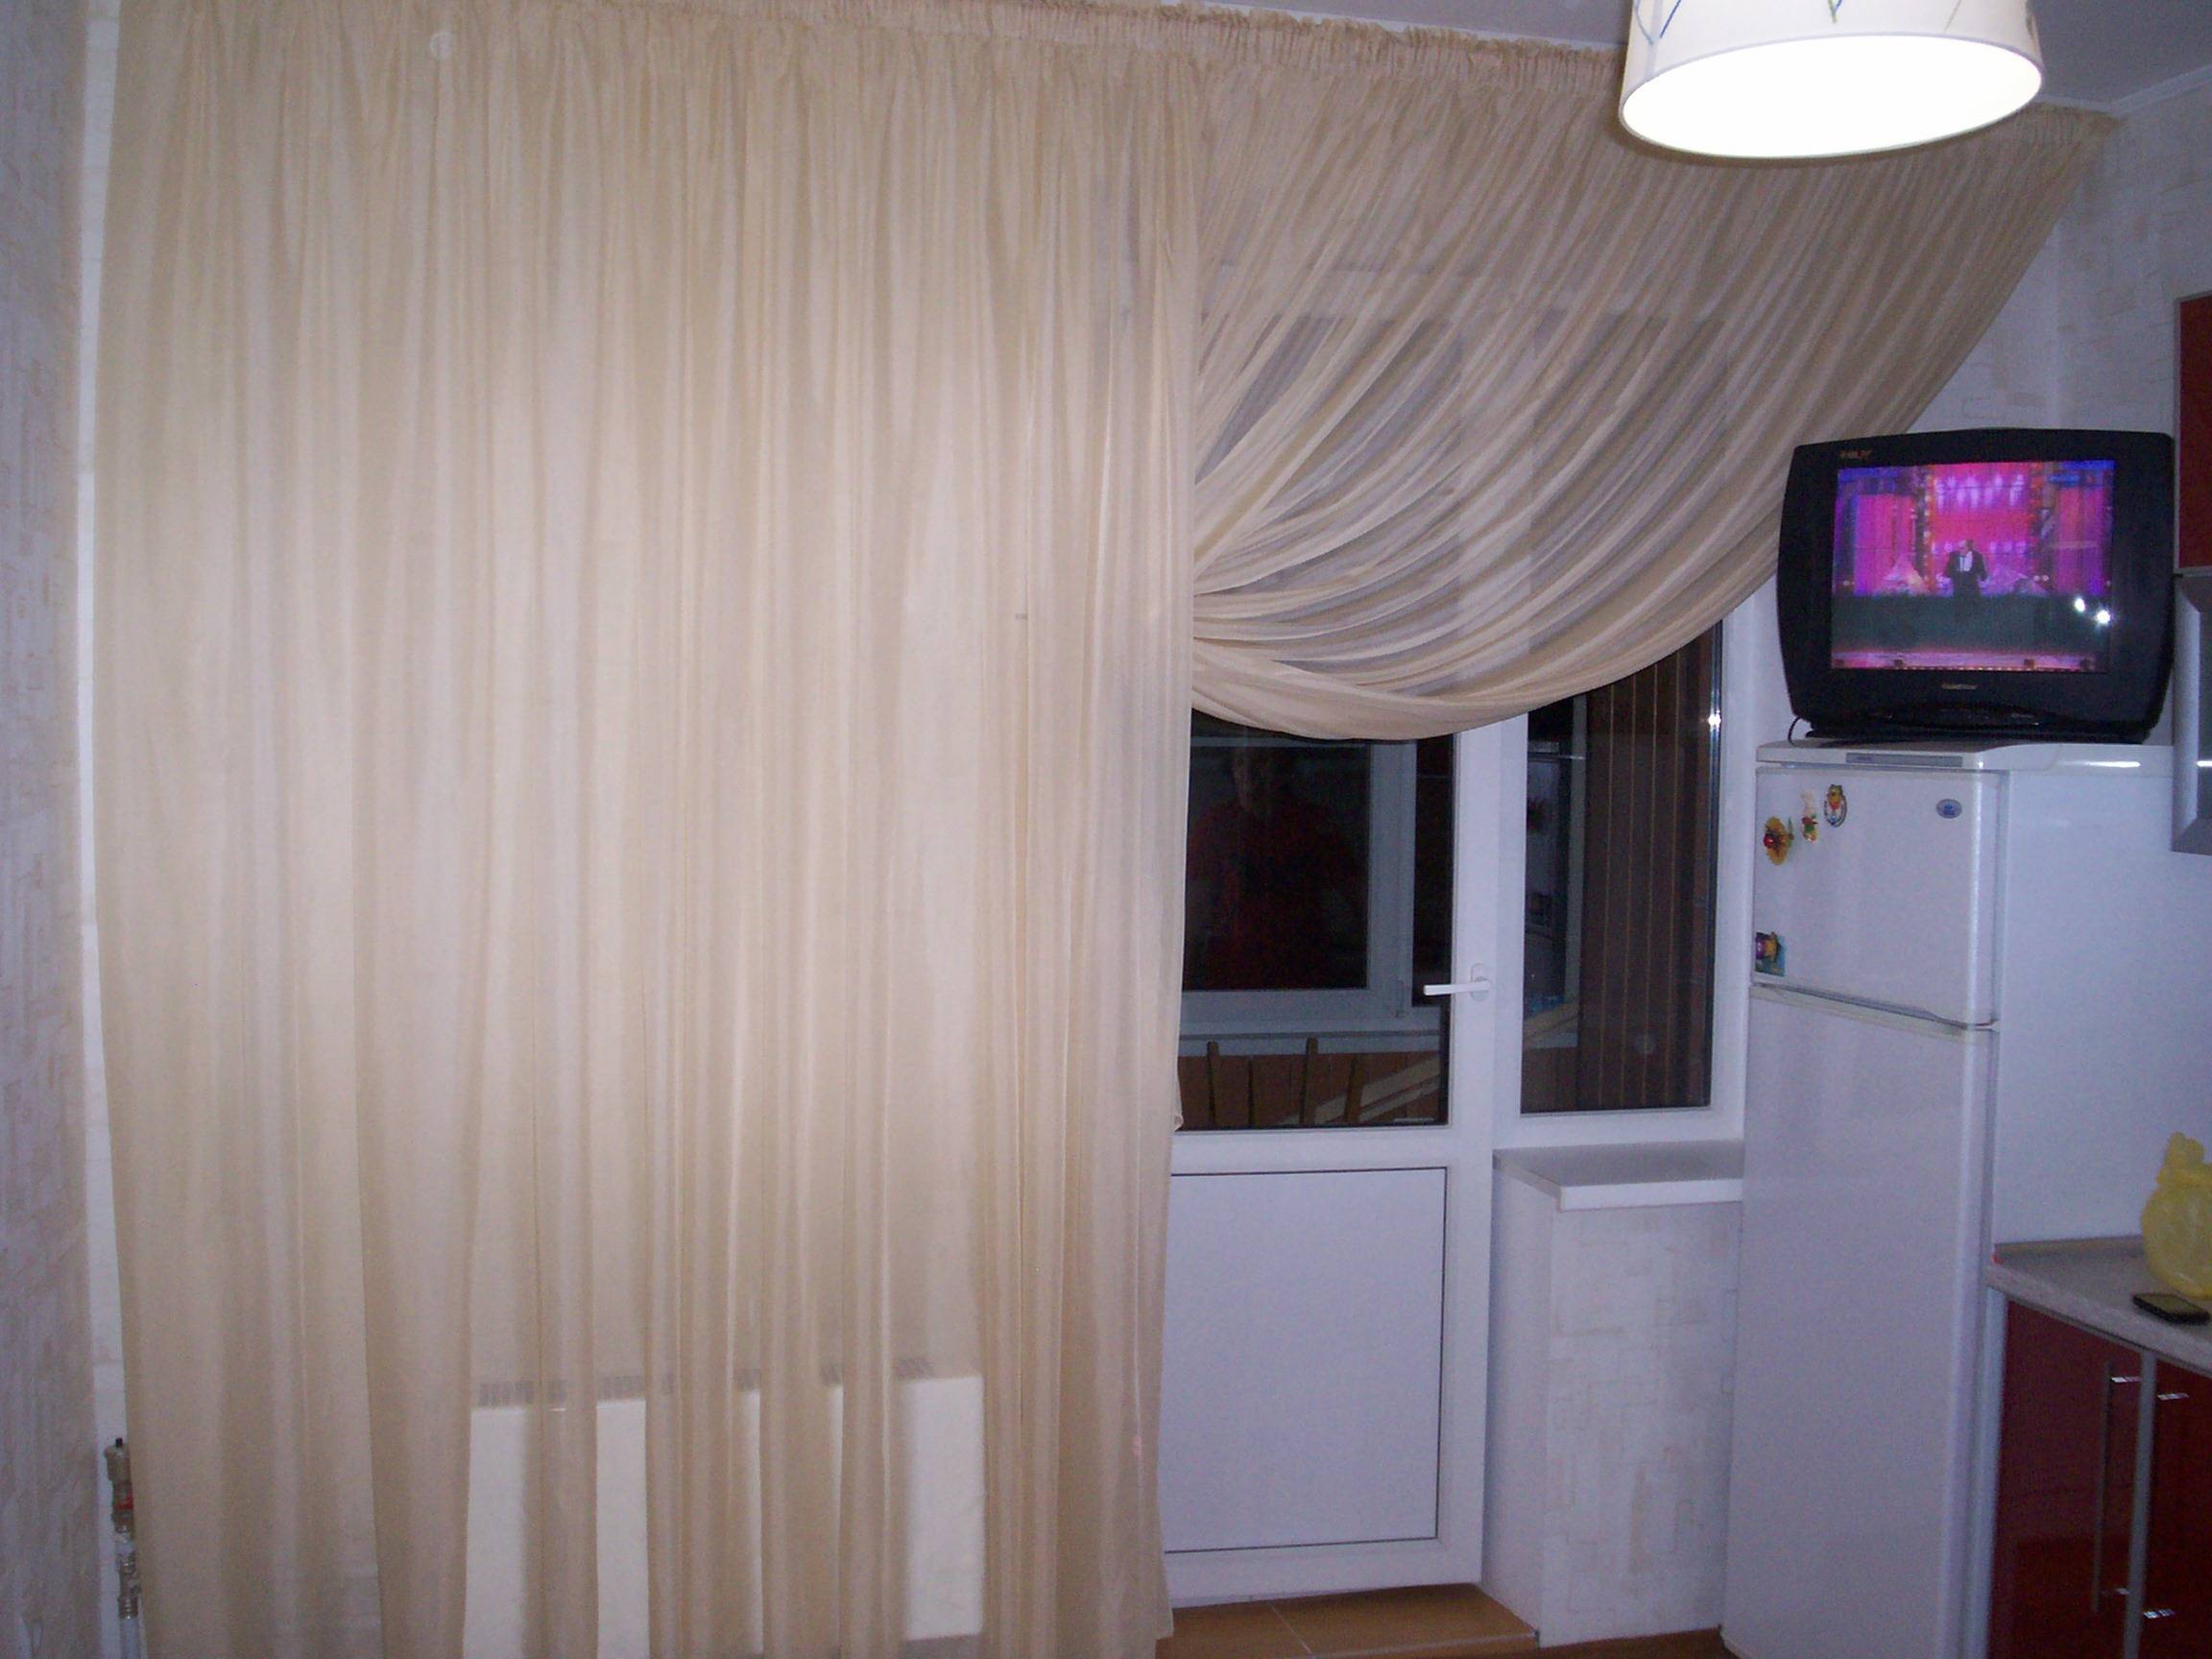 Виды штор и занавесок на окно с балконной дверью (37 фото)